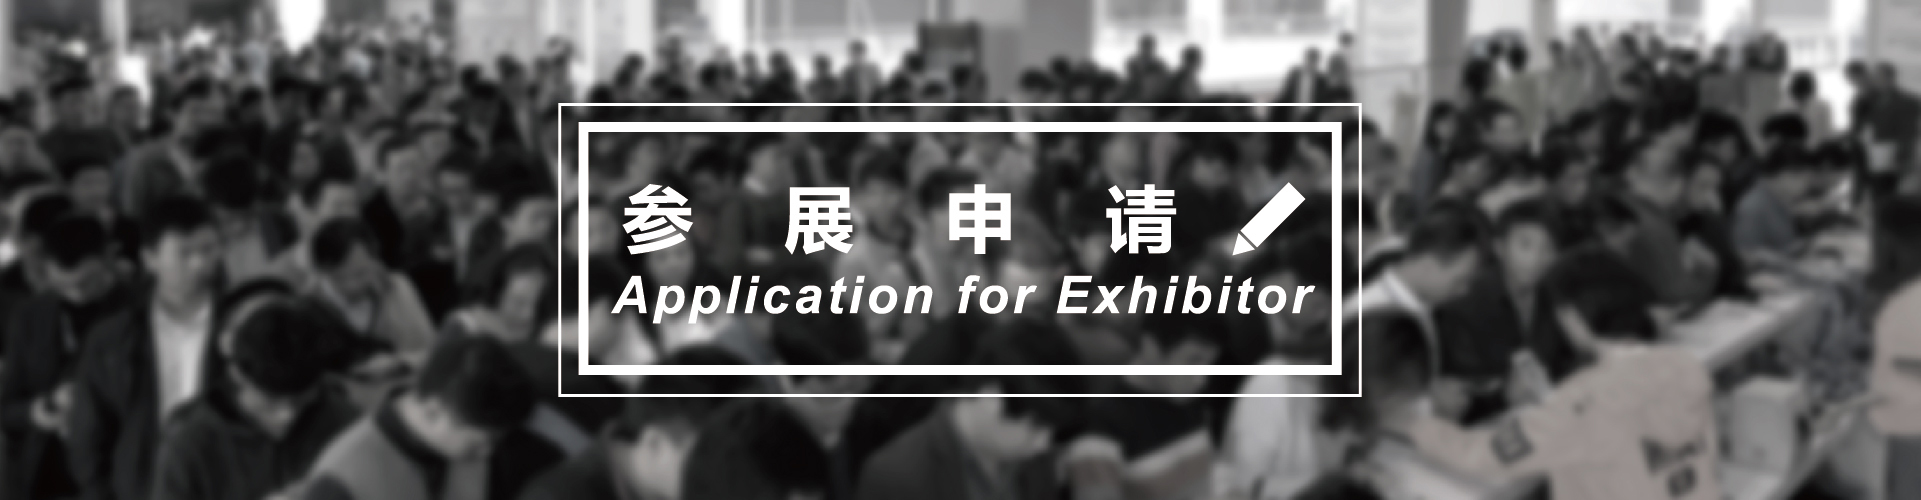 亚洲2020上海国际医药包装及装备展览会